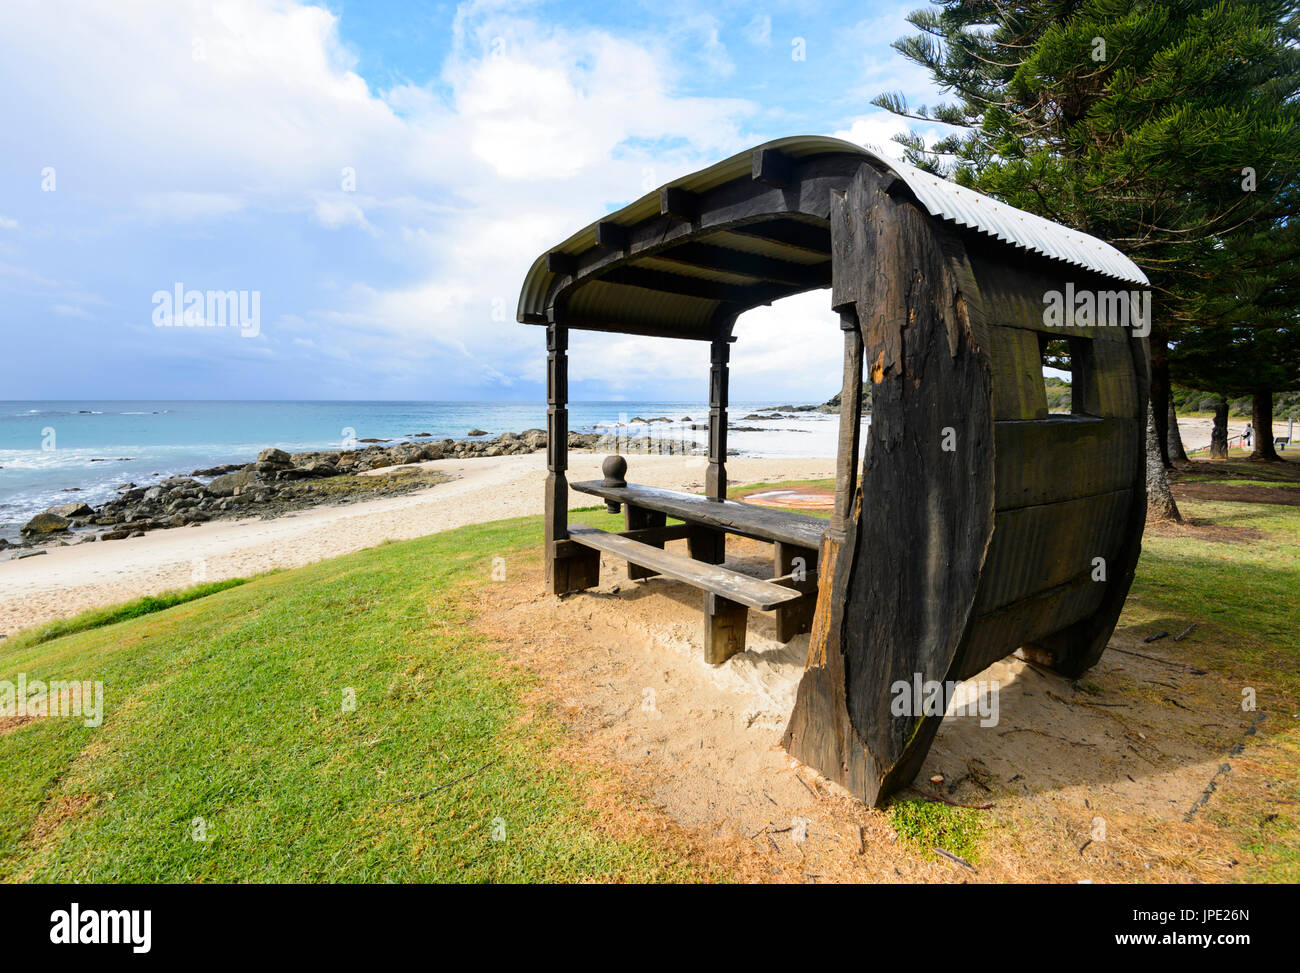 Table de pique-nique en bois sculpté en forme de caravane, Shelly Beach, Port Macquarie, New South Wales, NSW, Australie Banque D'Images